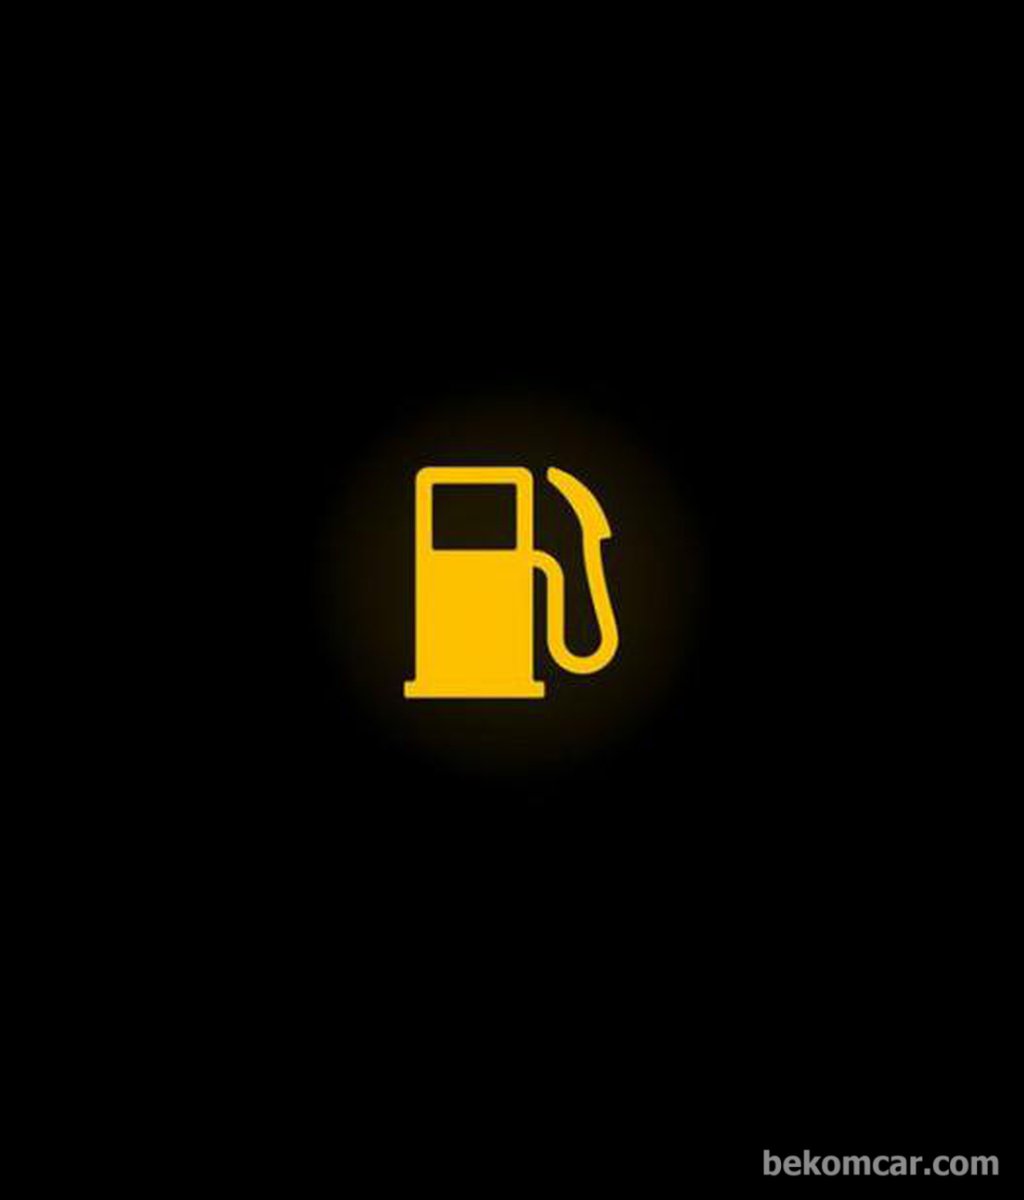 Low fuel level|bekomcar.com